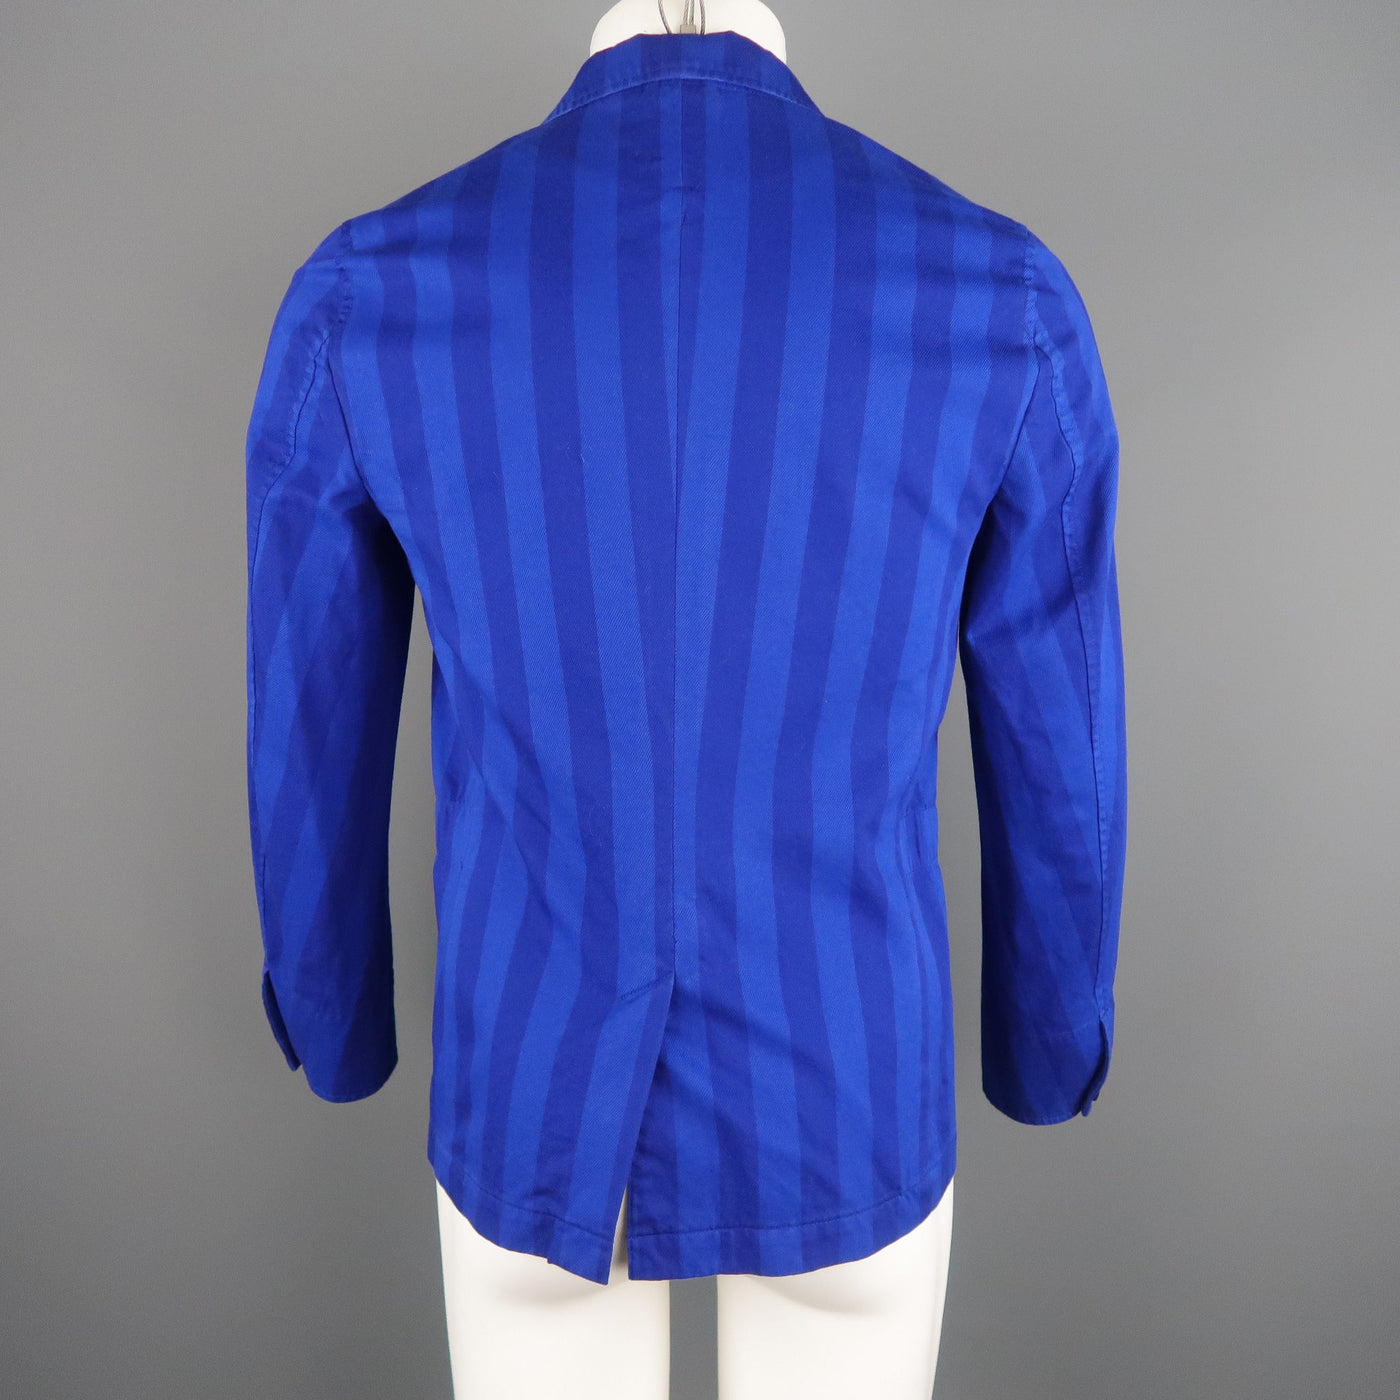 CABANE de ZUCCA Chest Size S Short Royal Blue Stripe Cotton Sport Coat